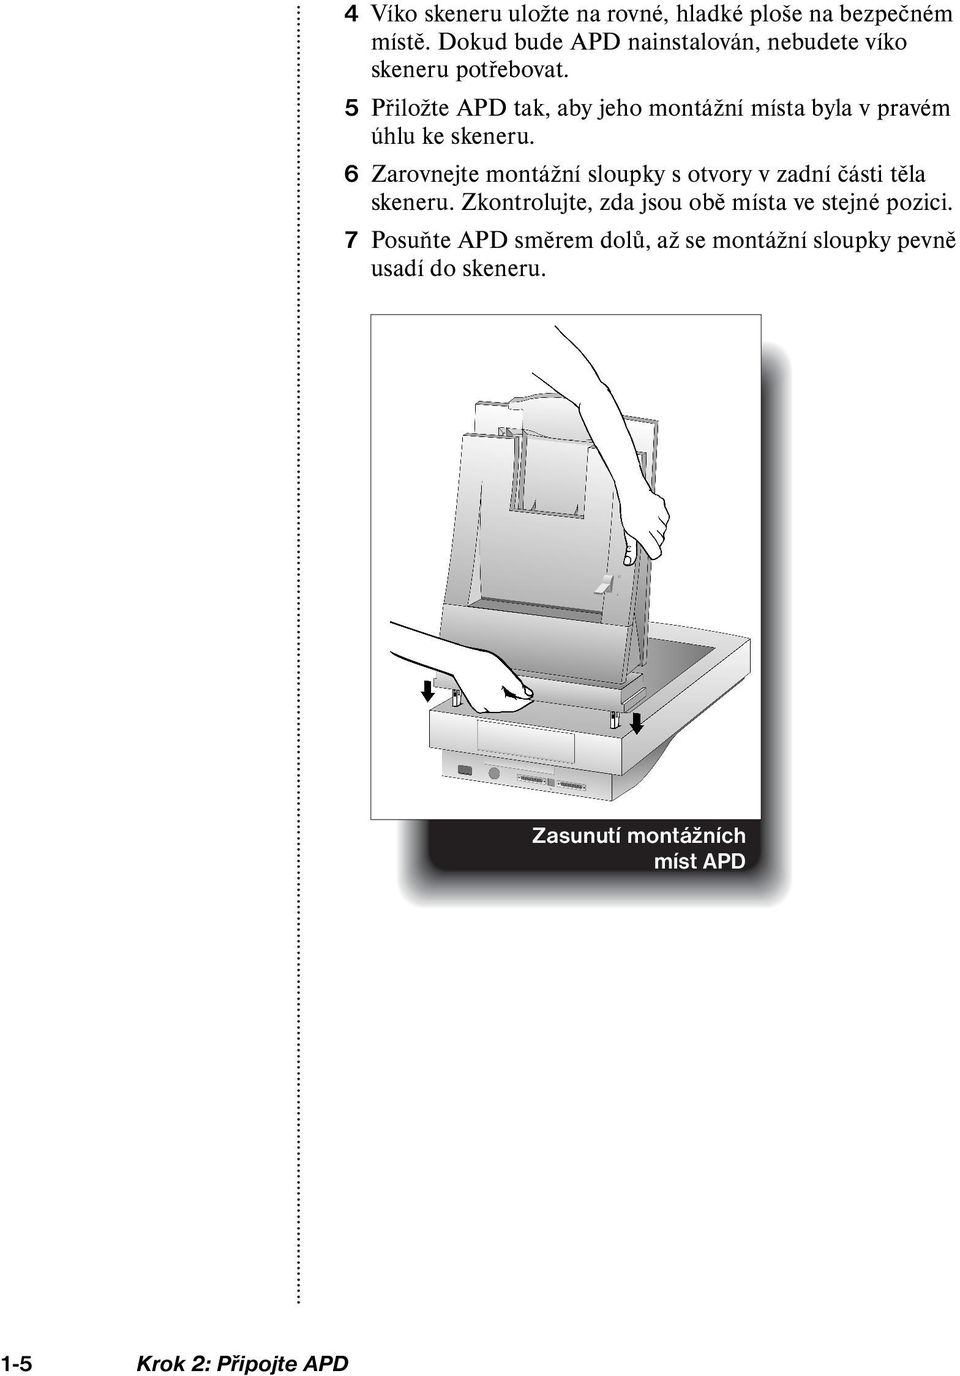 5 Přiložte APD tak, aby jeho montážní místa byla v pravém úhlu ke skeneru.